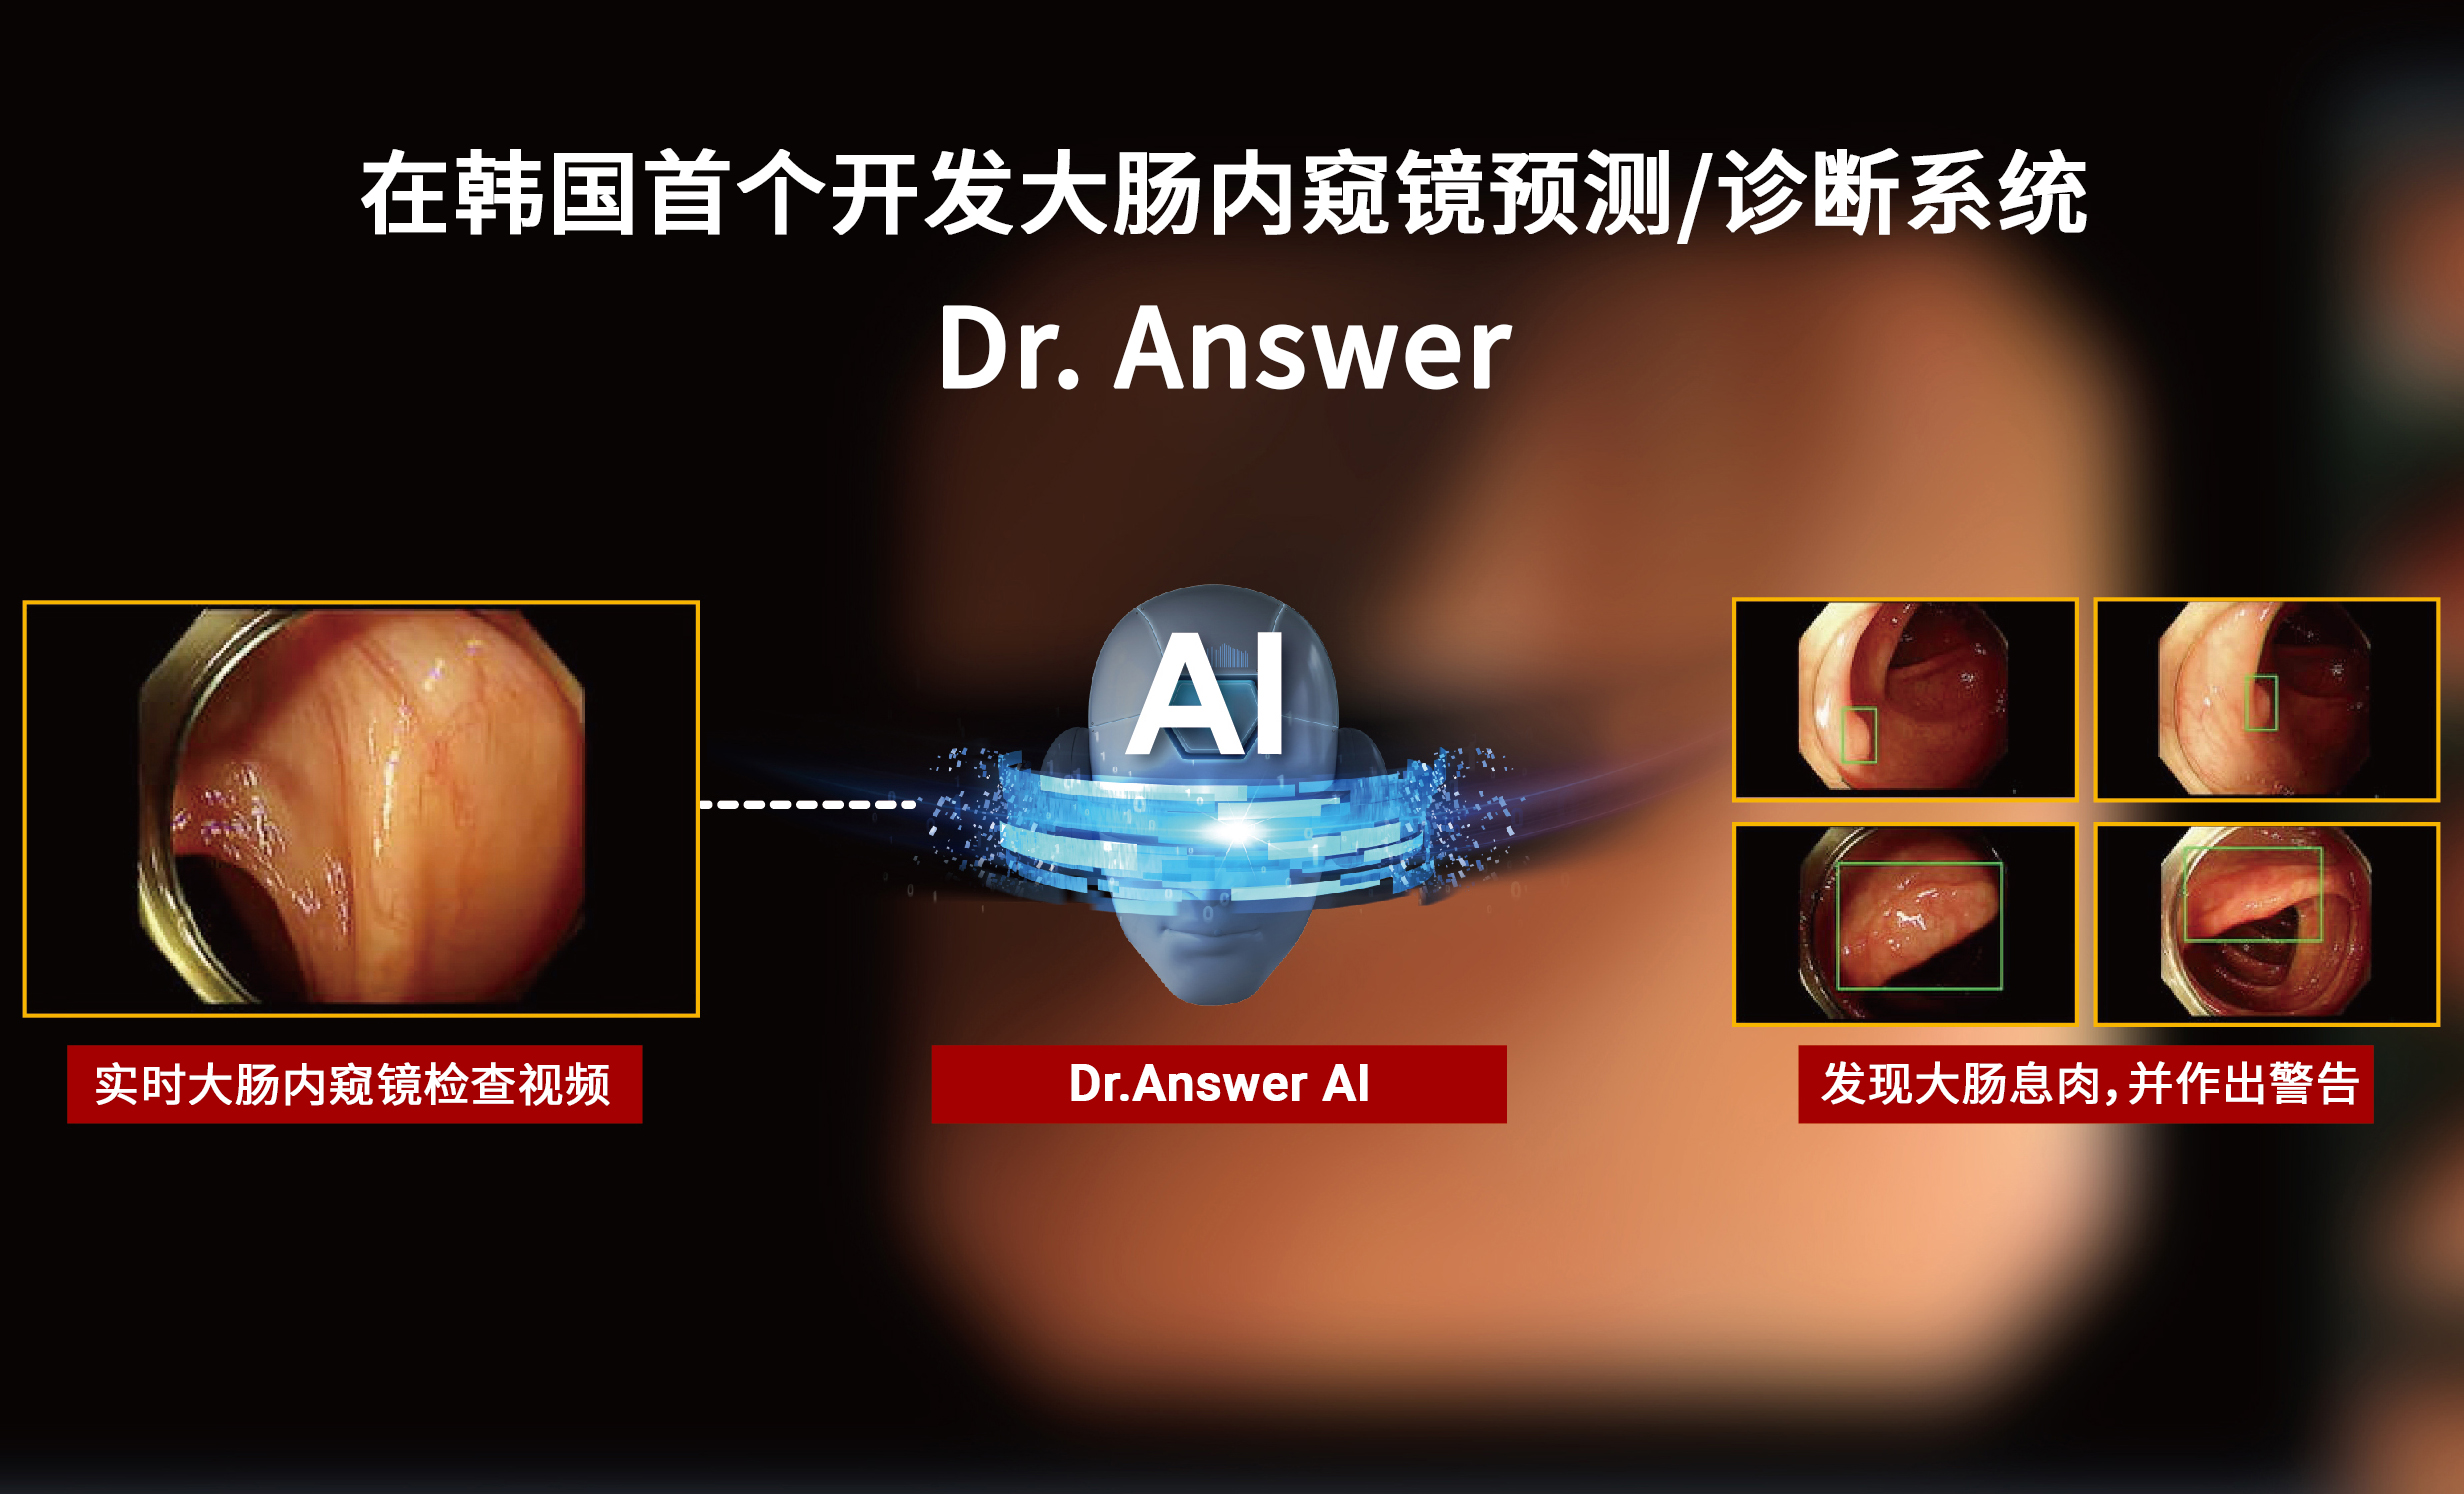 在韩国首个开发大肠内窥镜预测/诊断系统(Dr. Answer)